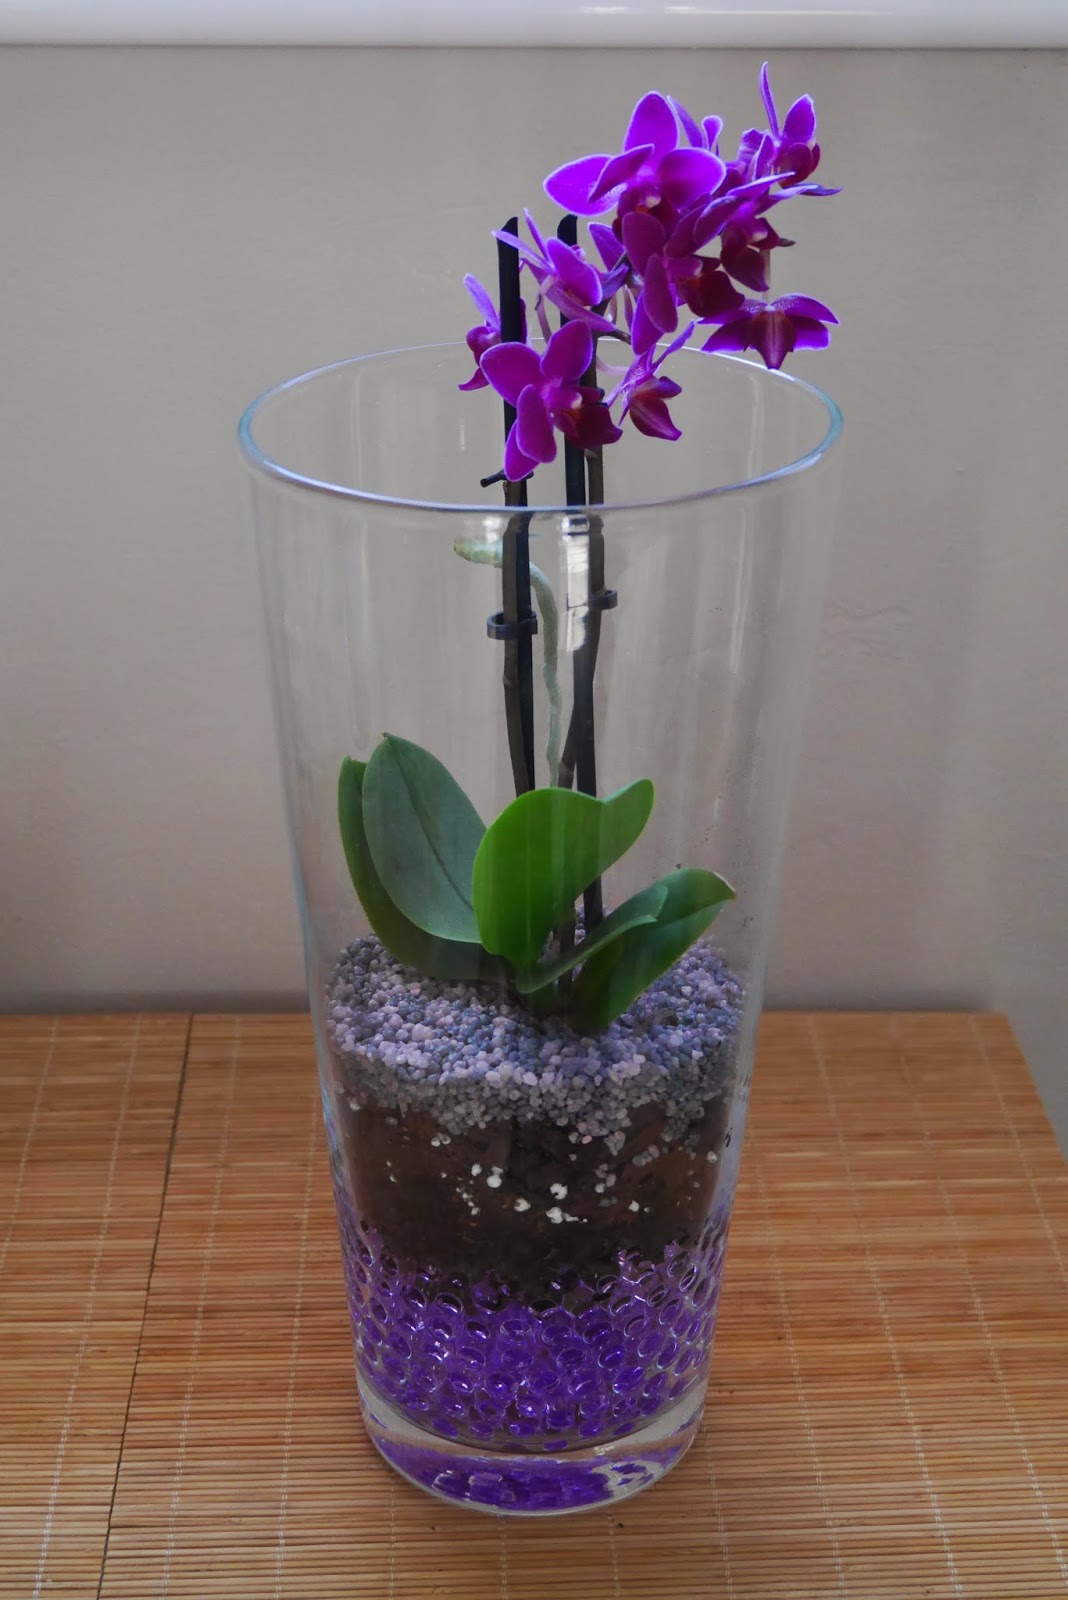 Artefacto otro Endurecer Mr WashiSan: Orquídea mariposa mini plantada en gel dentro de jarrón de  cristal